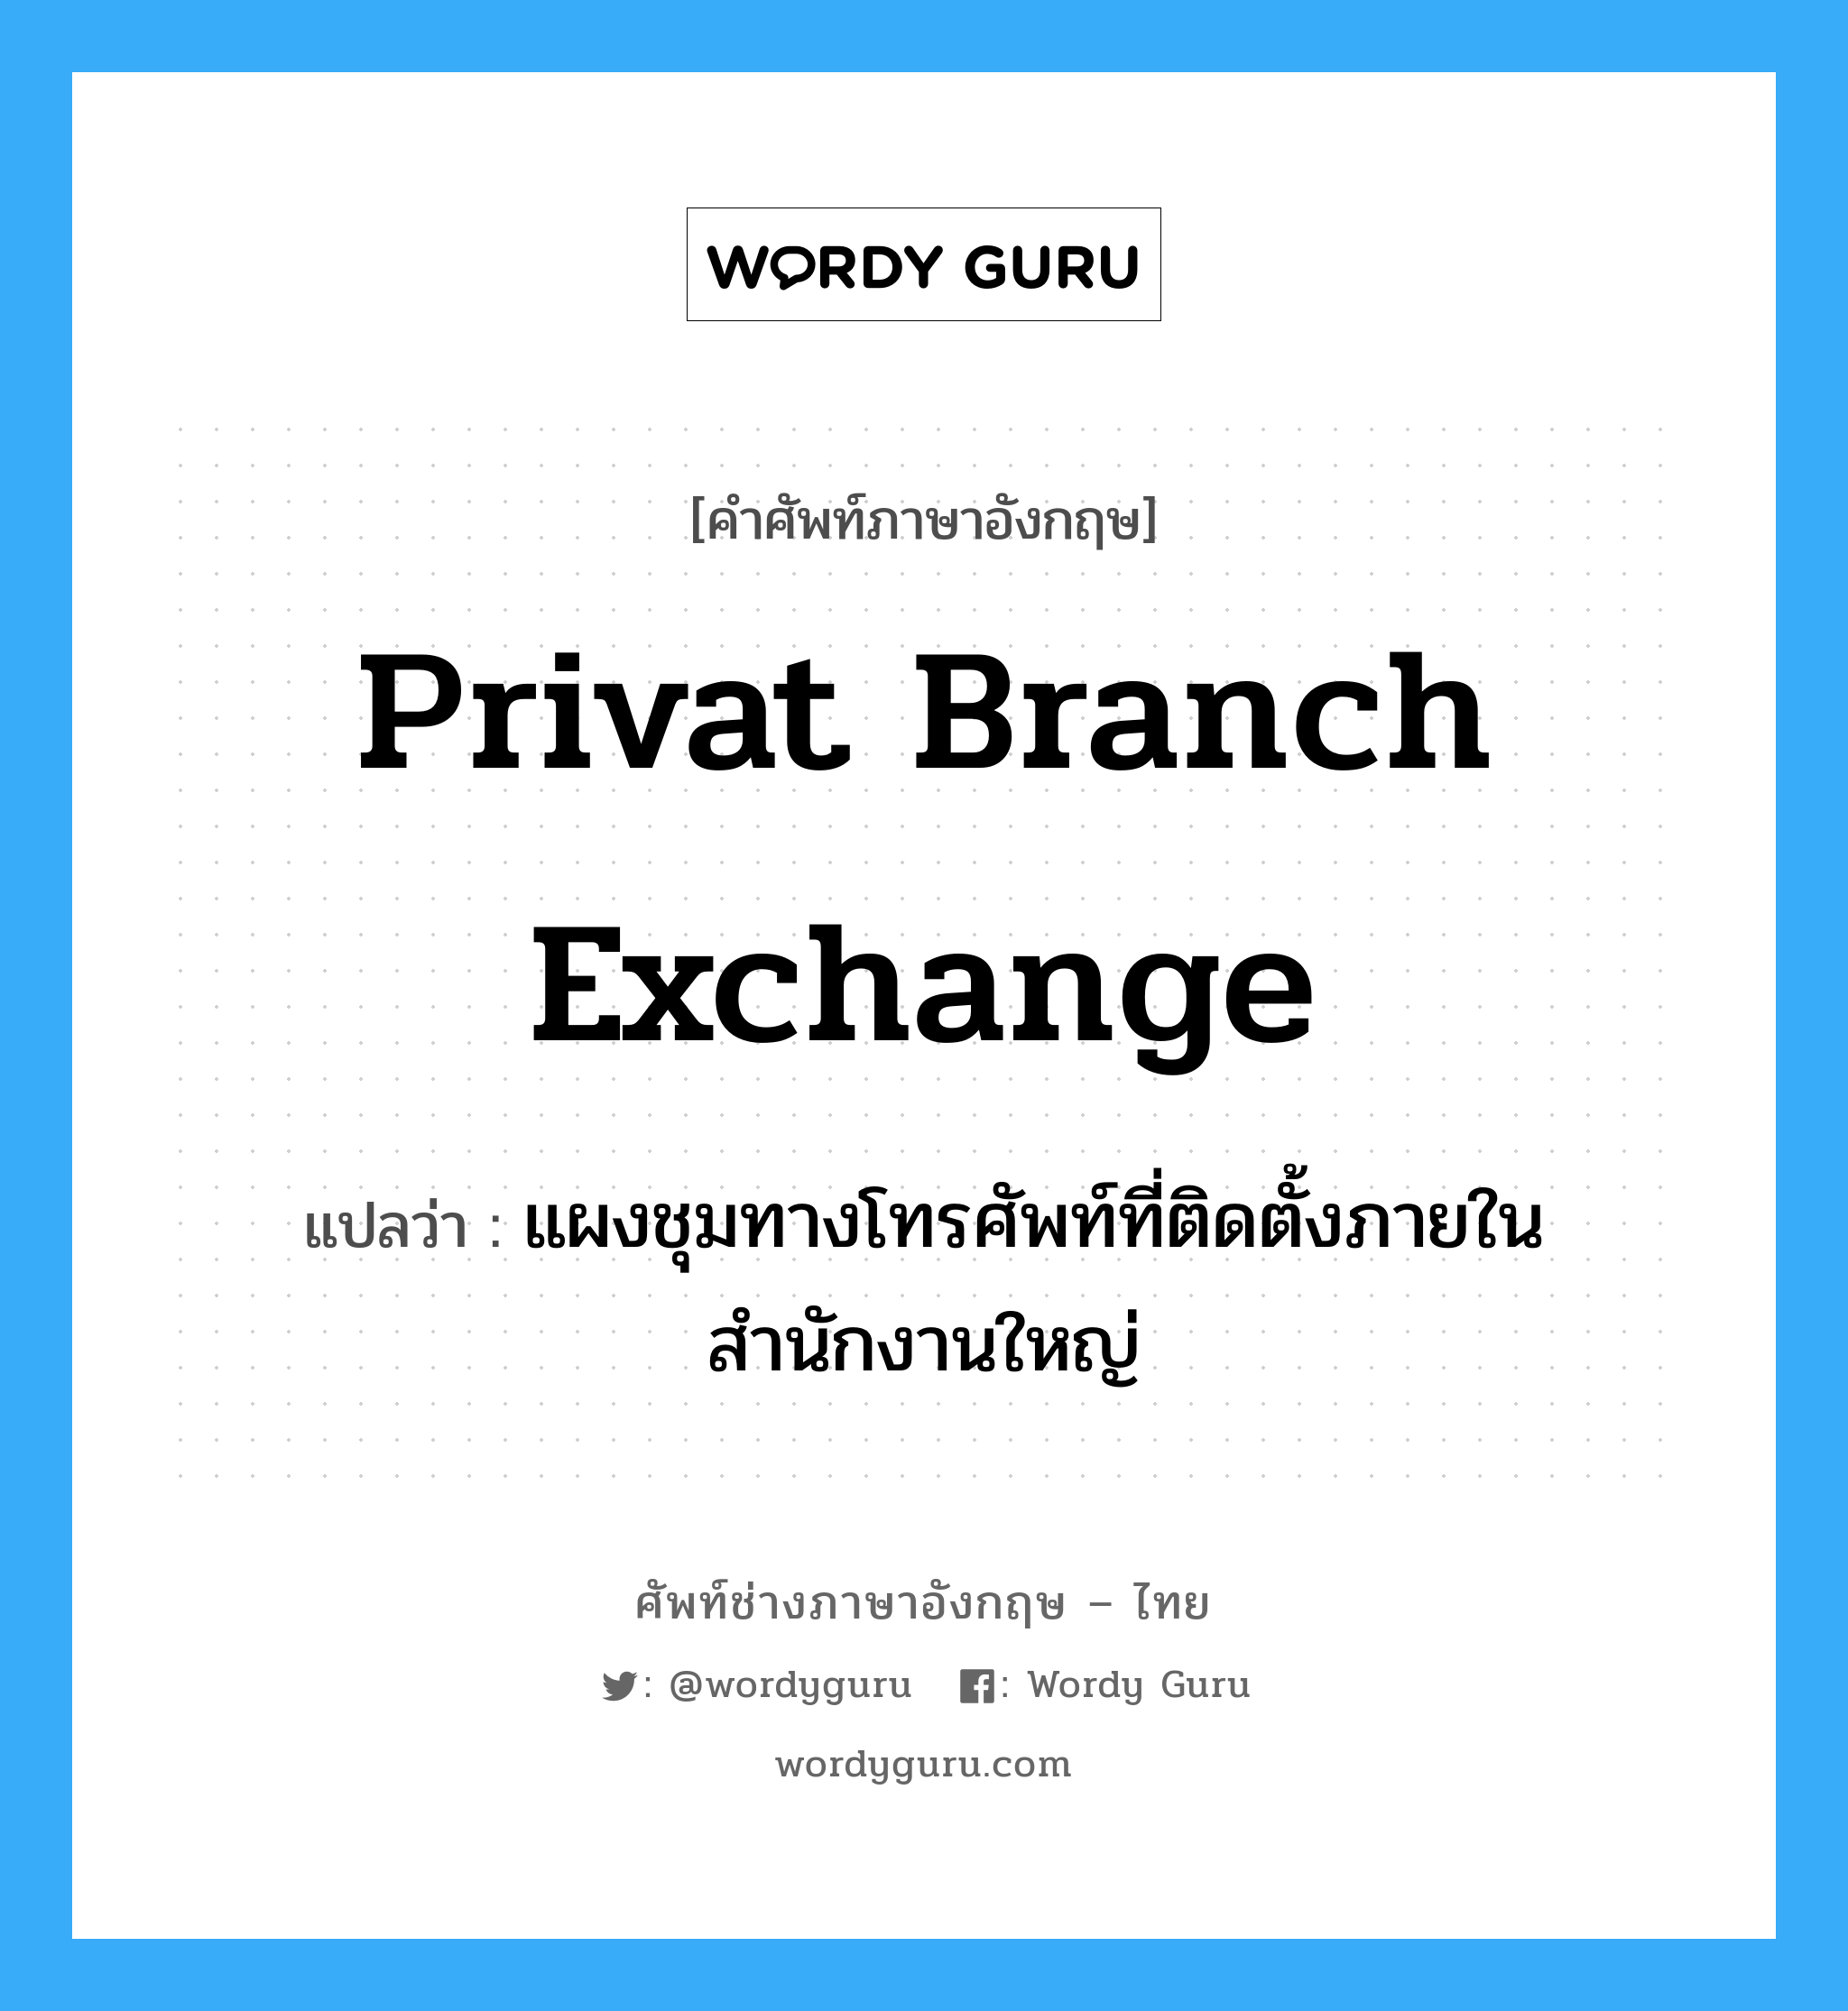 privat branch exchange แปลว่า?, คำศัพท์ช่างภาษาอังกฤษ - ไทย privat branch exchange คำศัพท์ภาษาอังกฤษ privat branch exchange แปลว่า แผงชุมทางโทรศัพท์ที่ติดตั้งภายในสำนักงานใหญ่